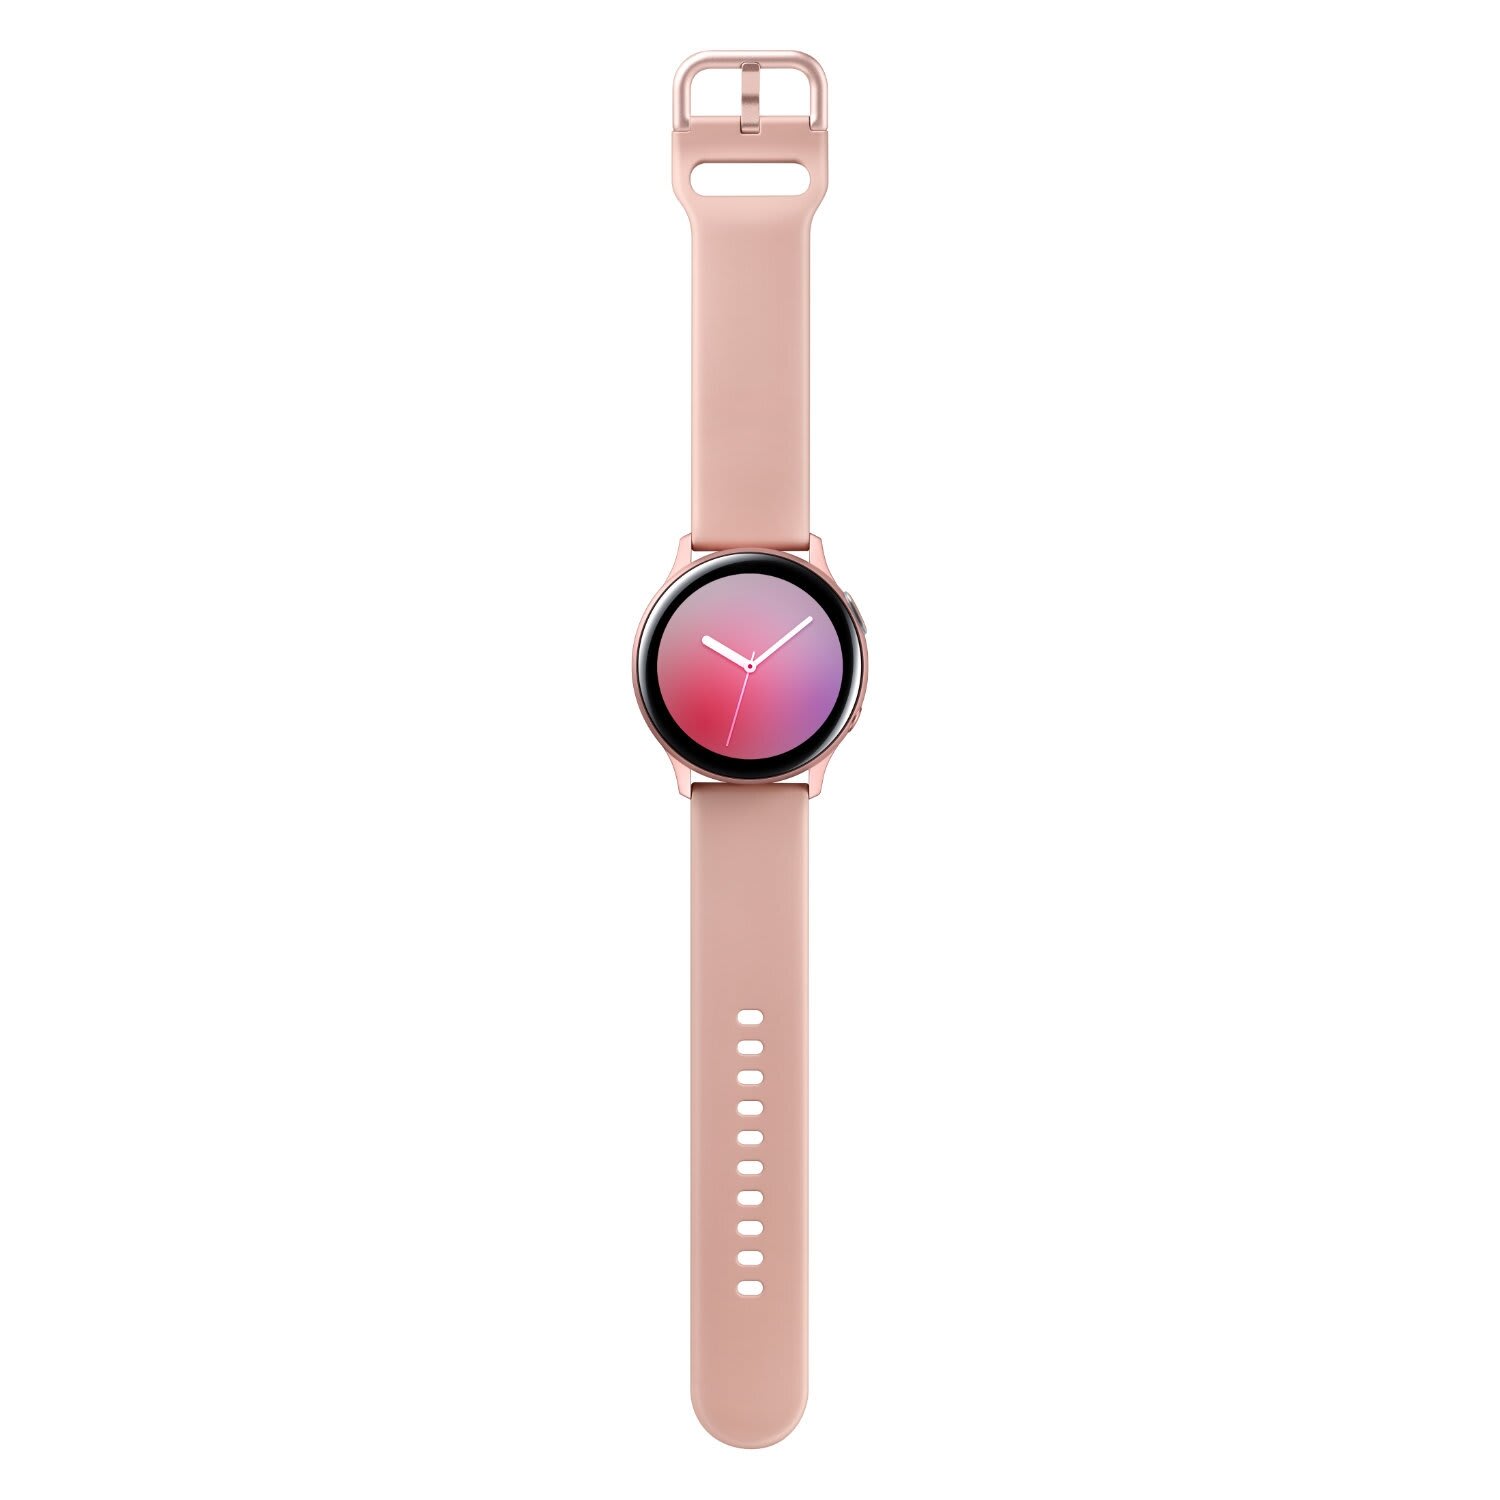 Galaxy watch розовый